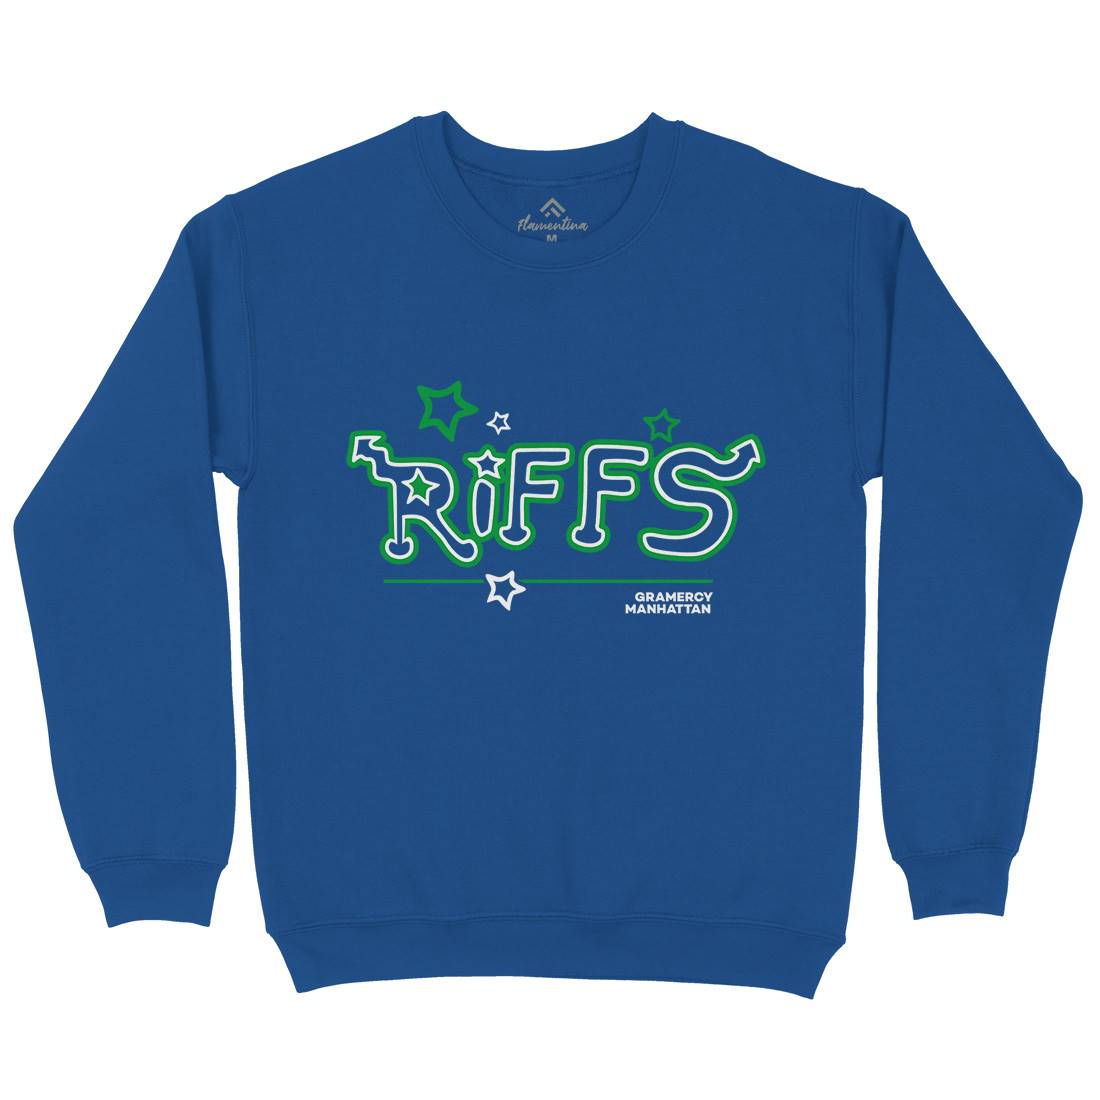 Riffs Kids Crew Neck Sweatshirt Retro D290